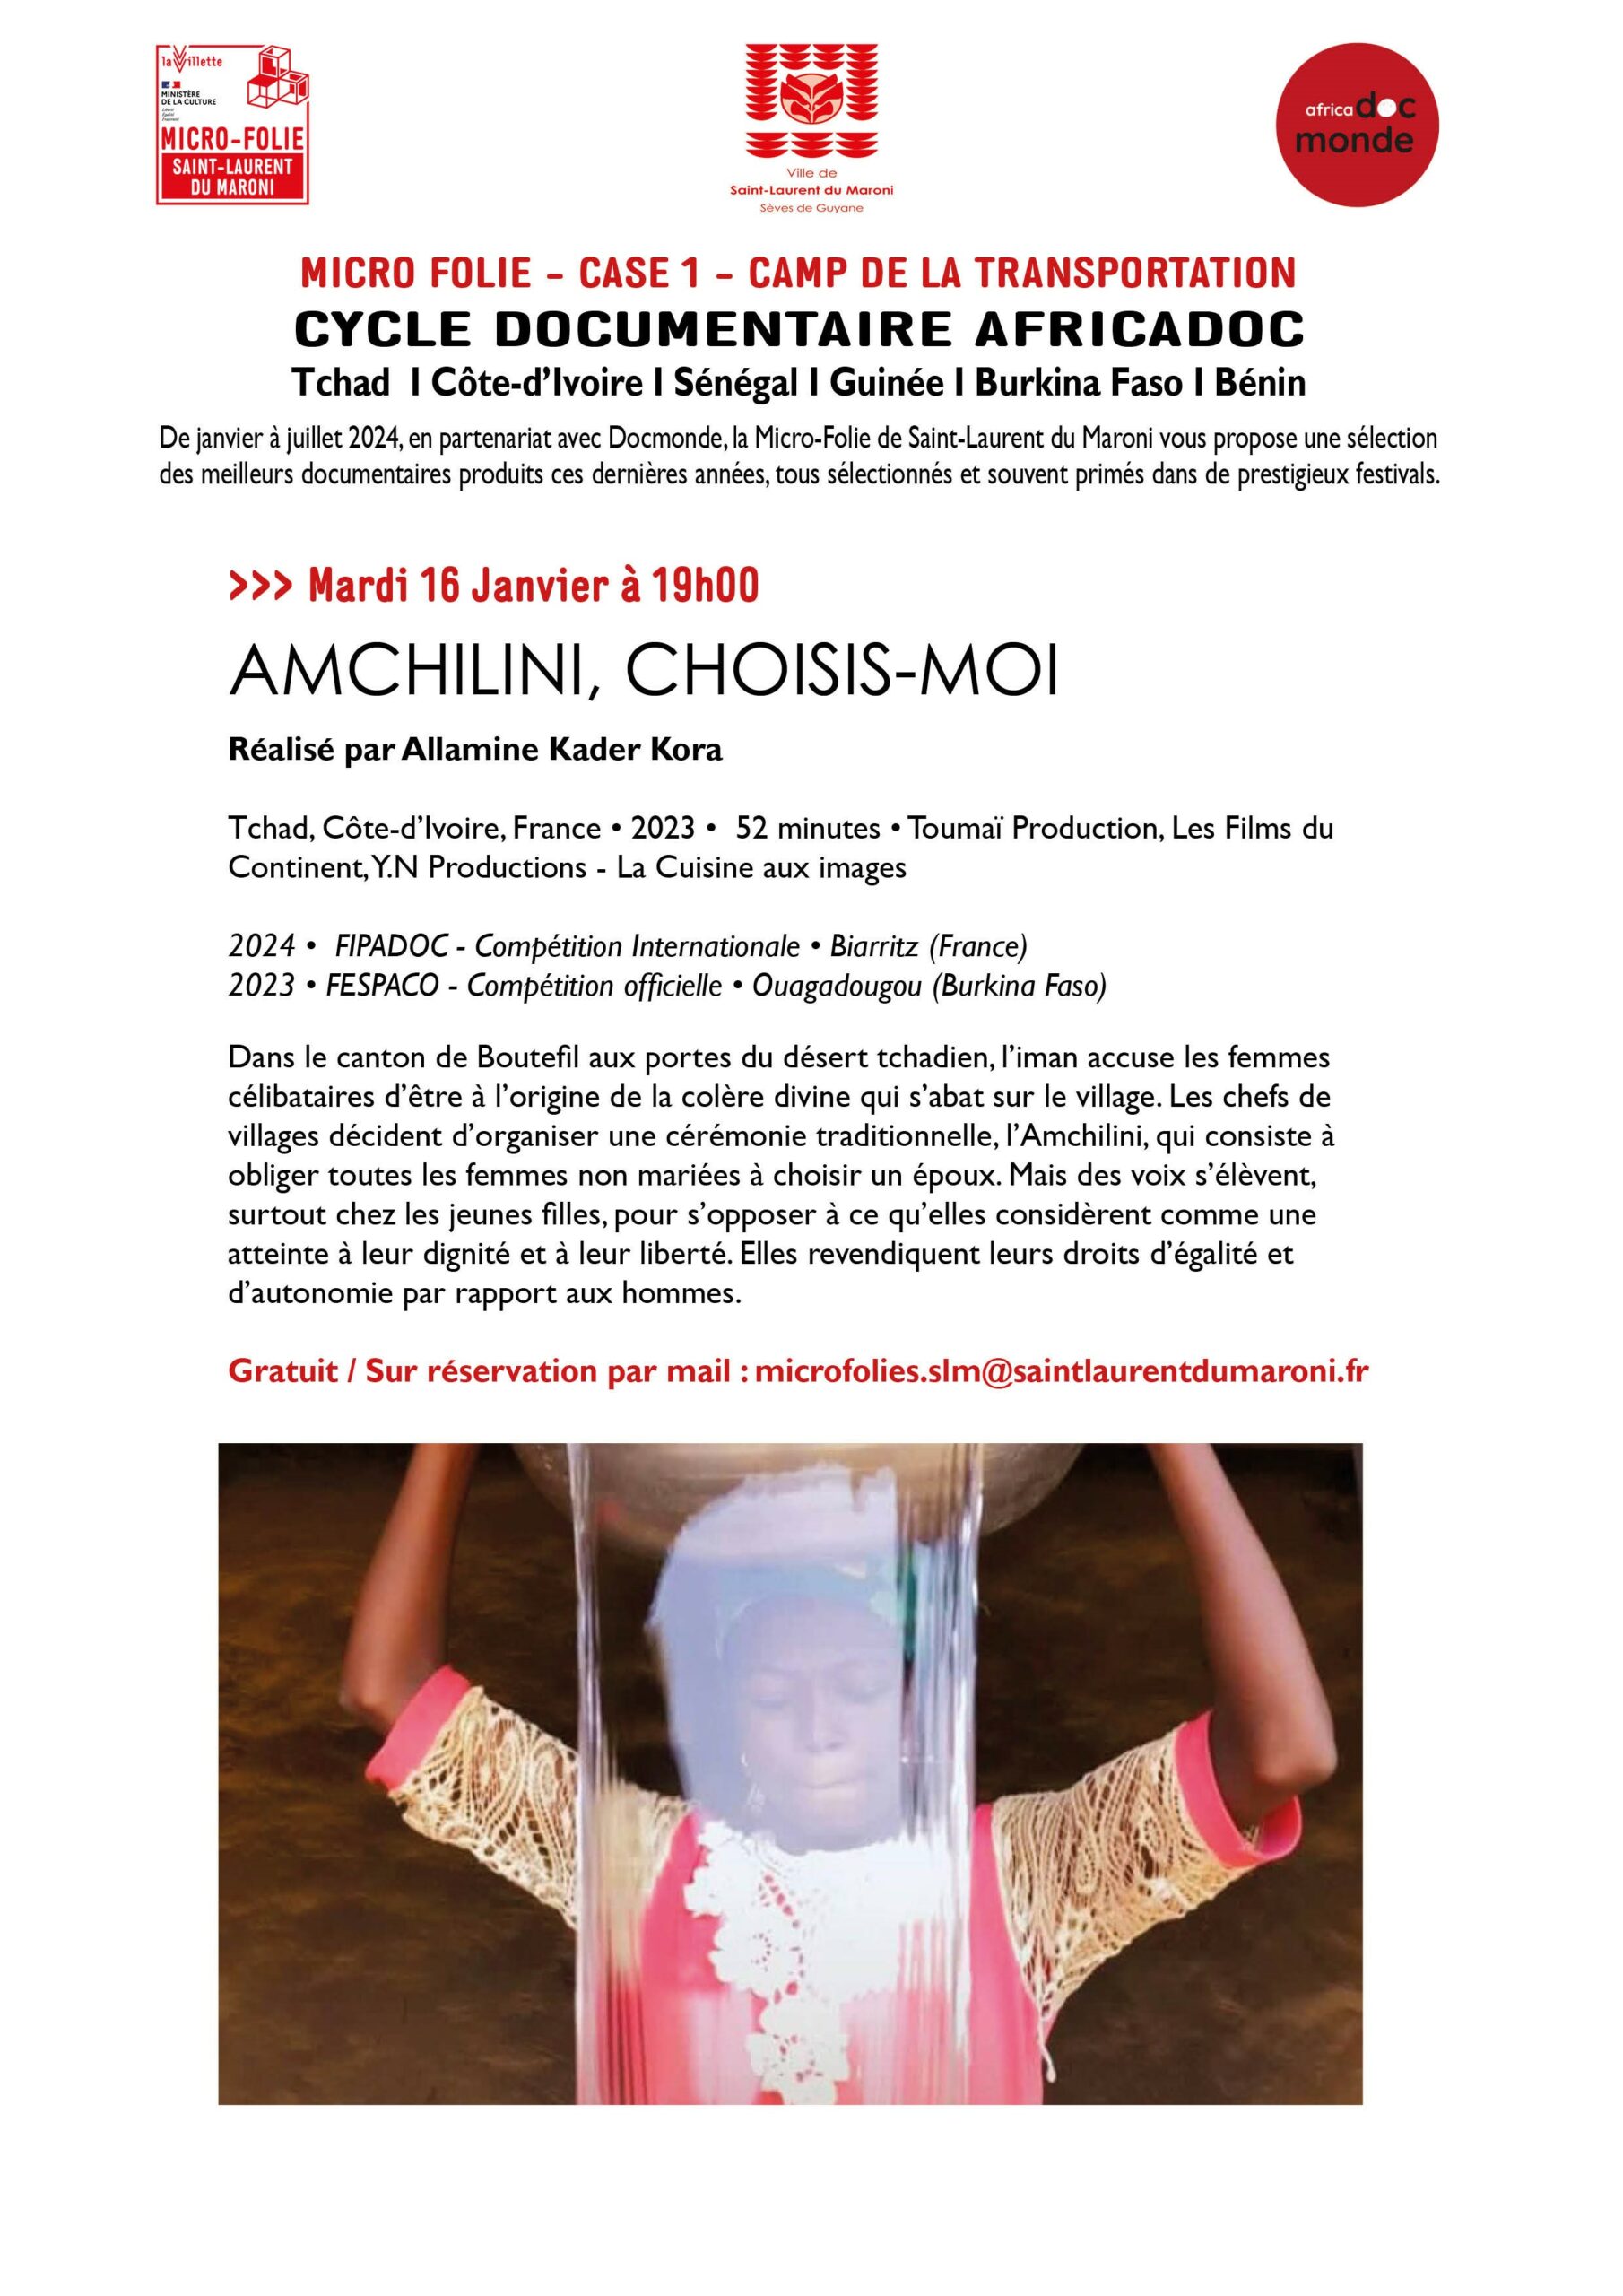 Projection Micro-folie Cycle Africa Doc, premier film projeté le mardi 16 janvier : "Amchilini, choisis-moi" de Allamine Kader Kora.